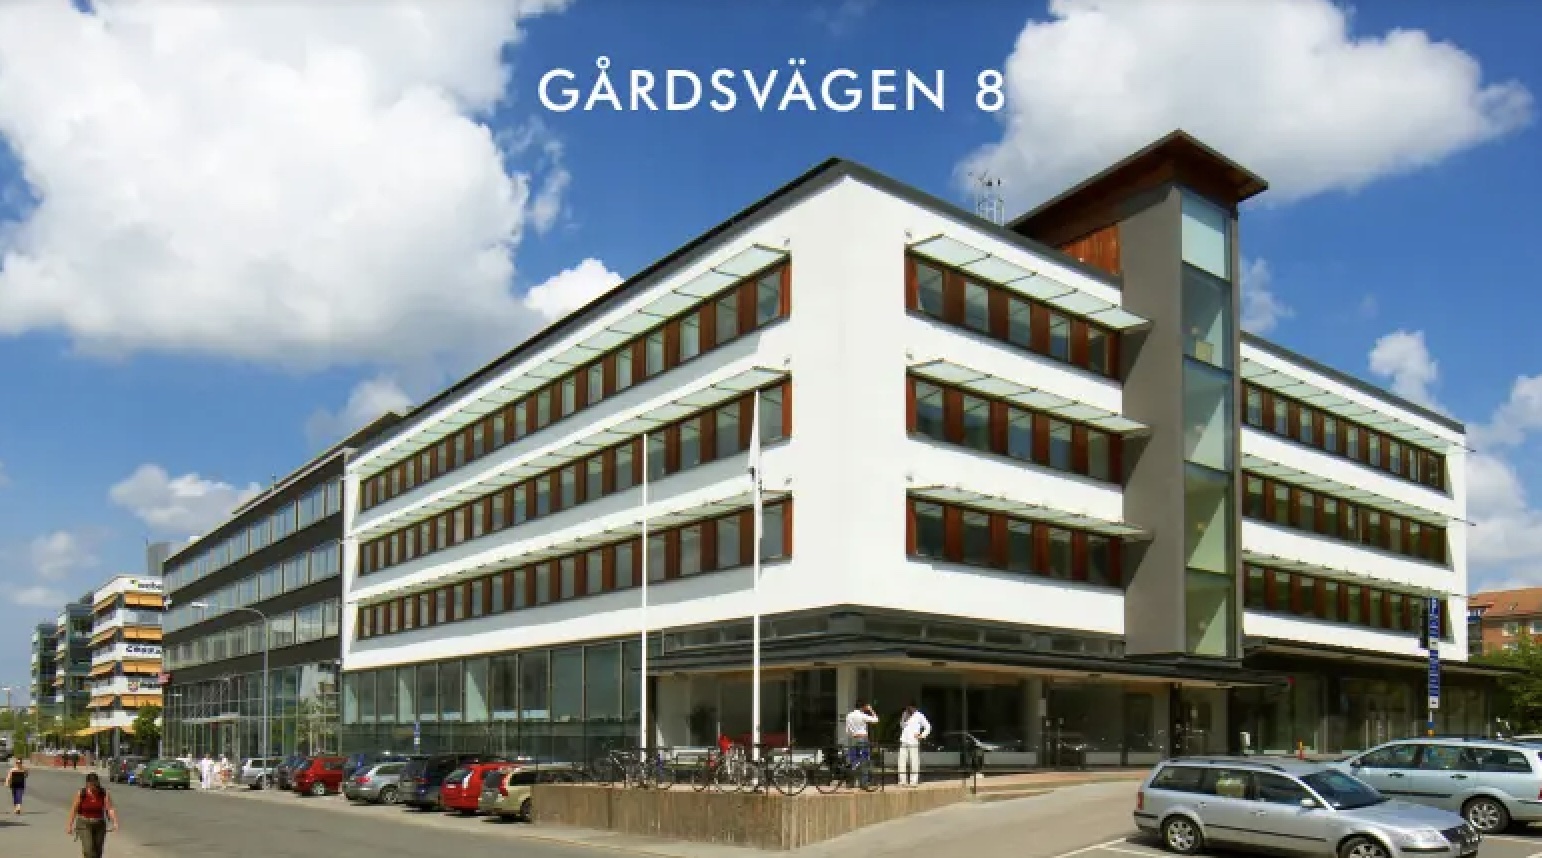 Main image of building Gårdsvägen 8